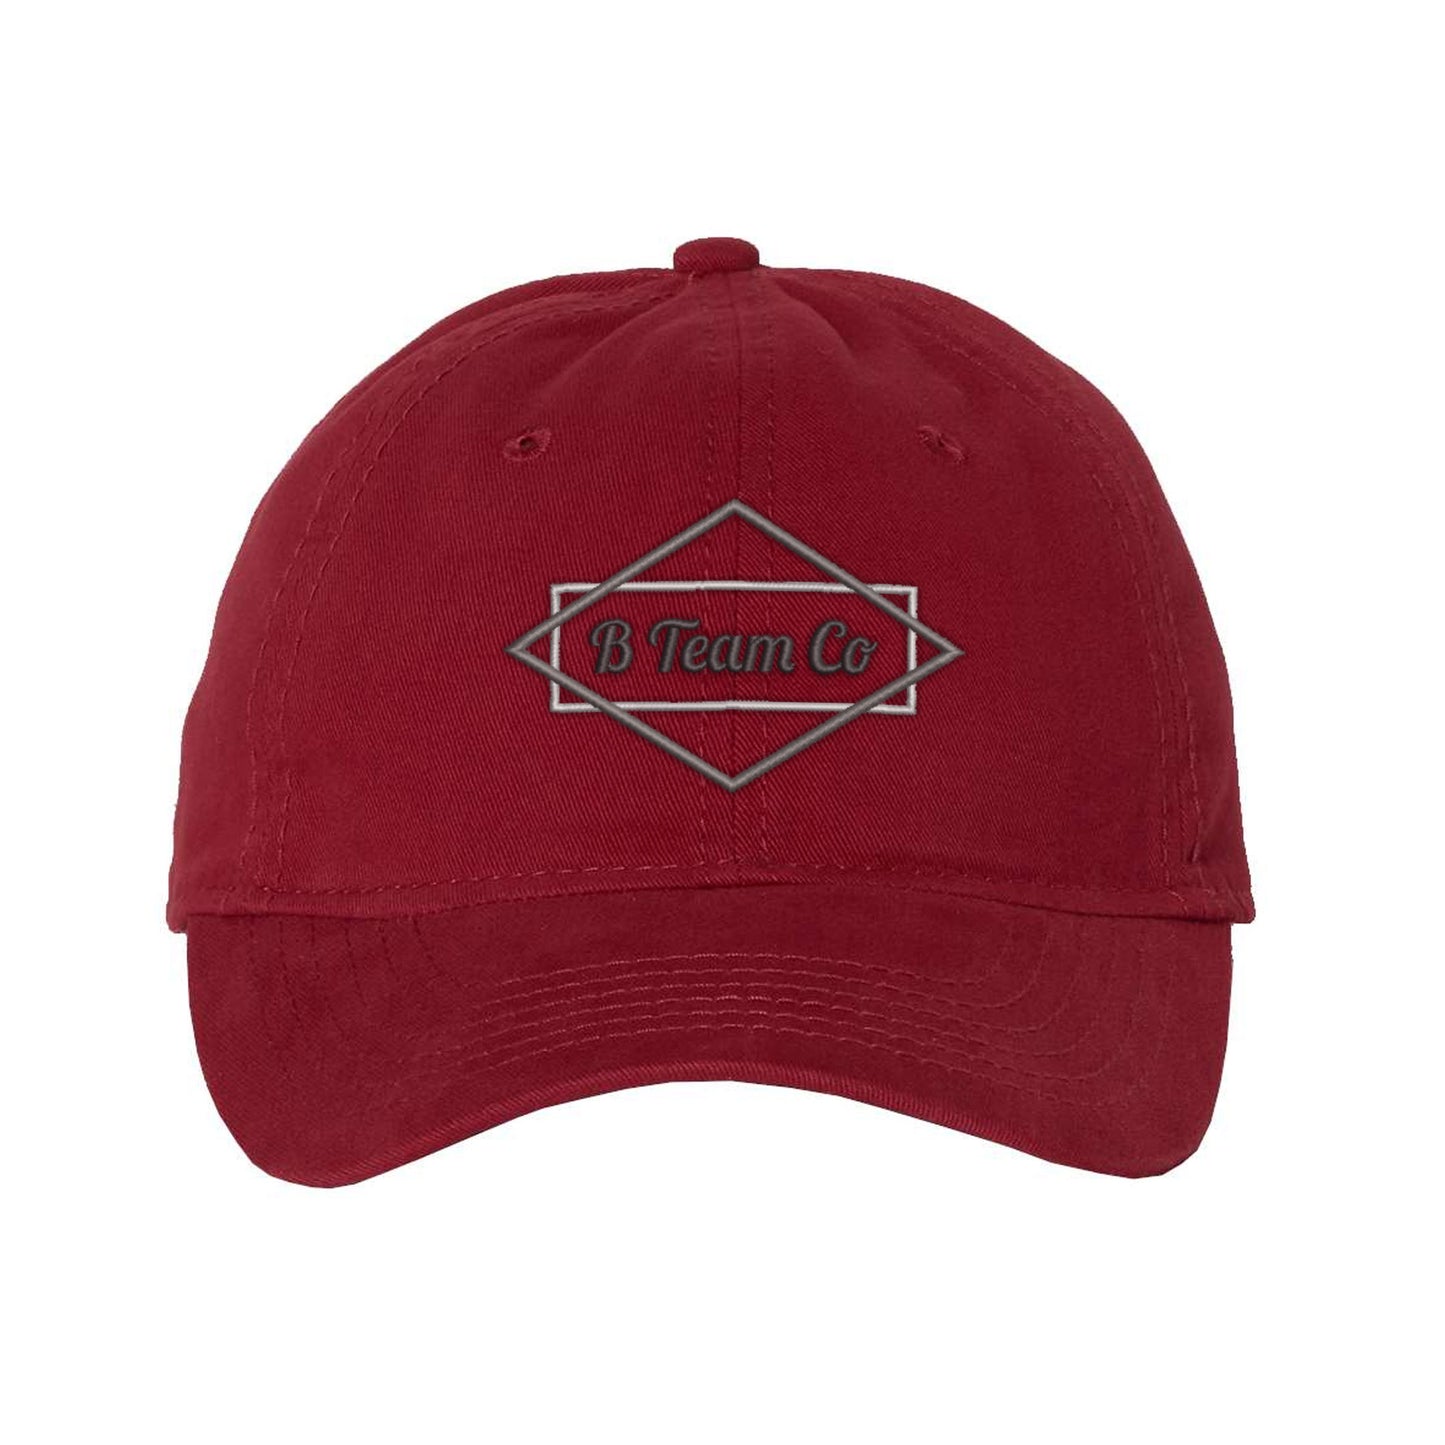 B Team Diamond Embroidered Hat